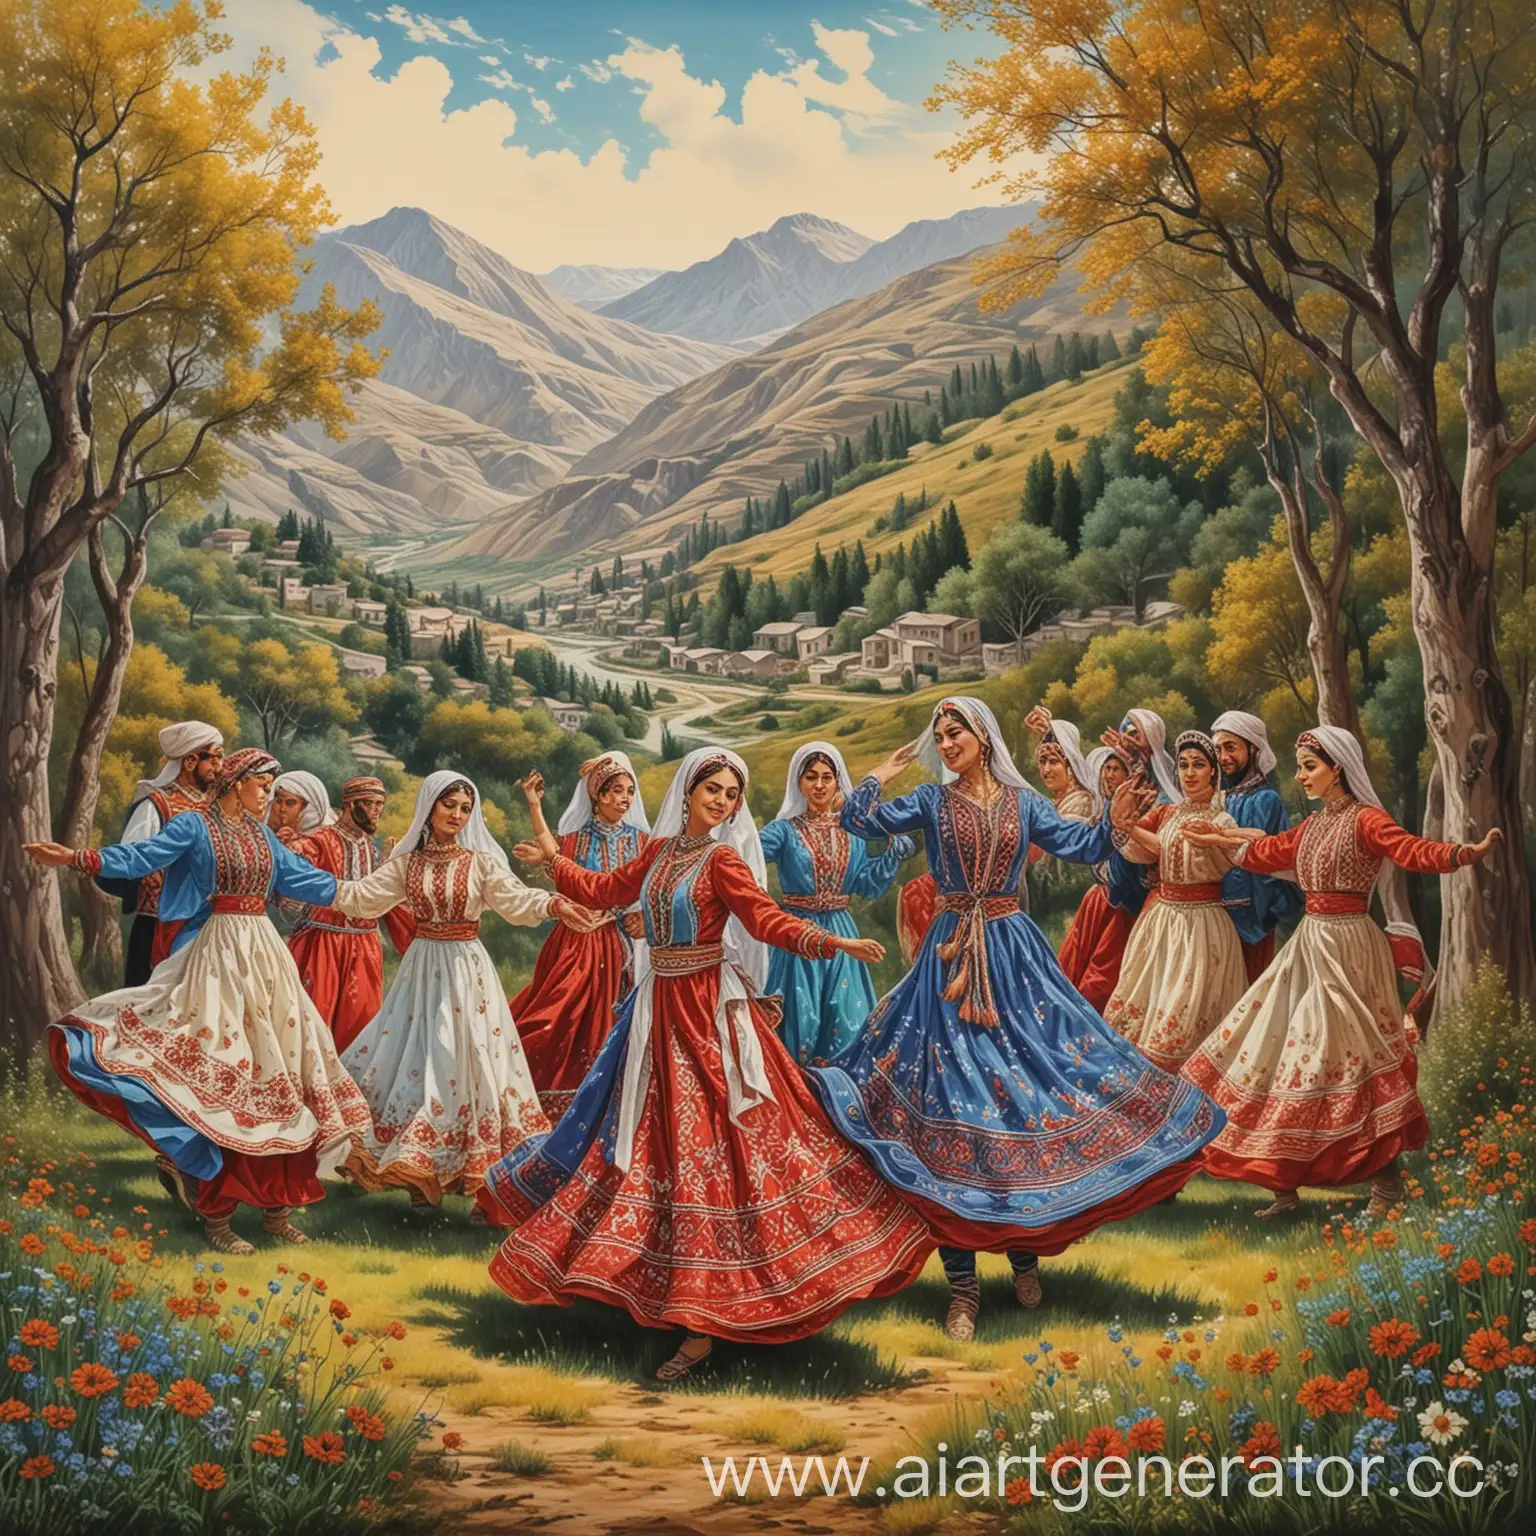 народный азербайджанский танец, где мужчины и женщины танцуют на фоне природы, сказочная рисовка